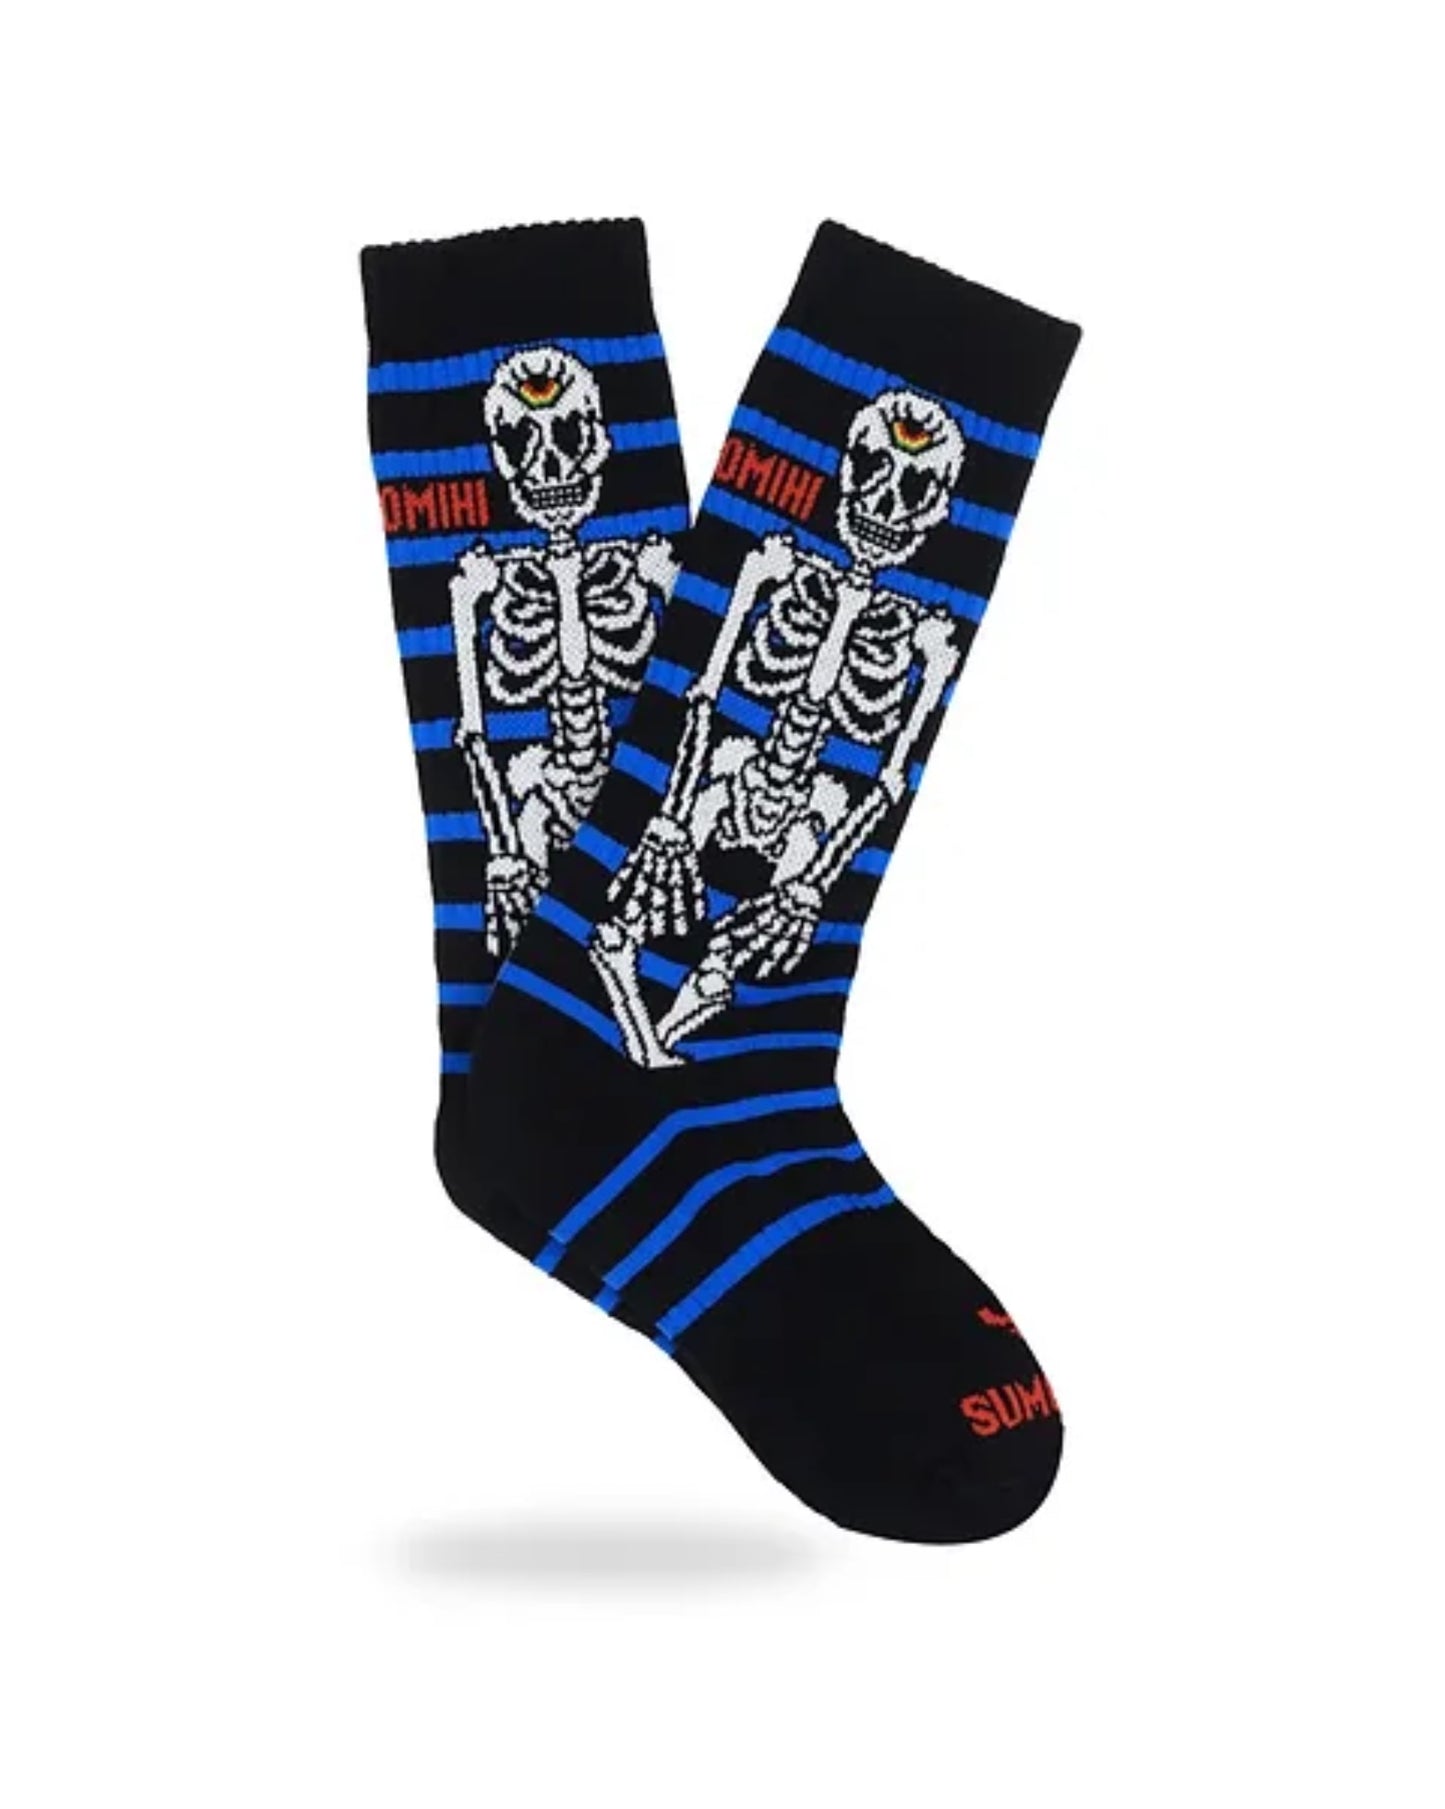 Skeleton sock